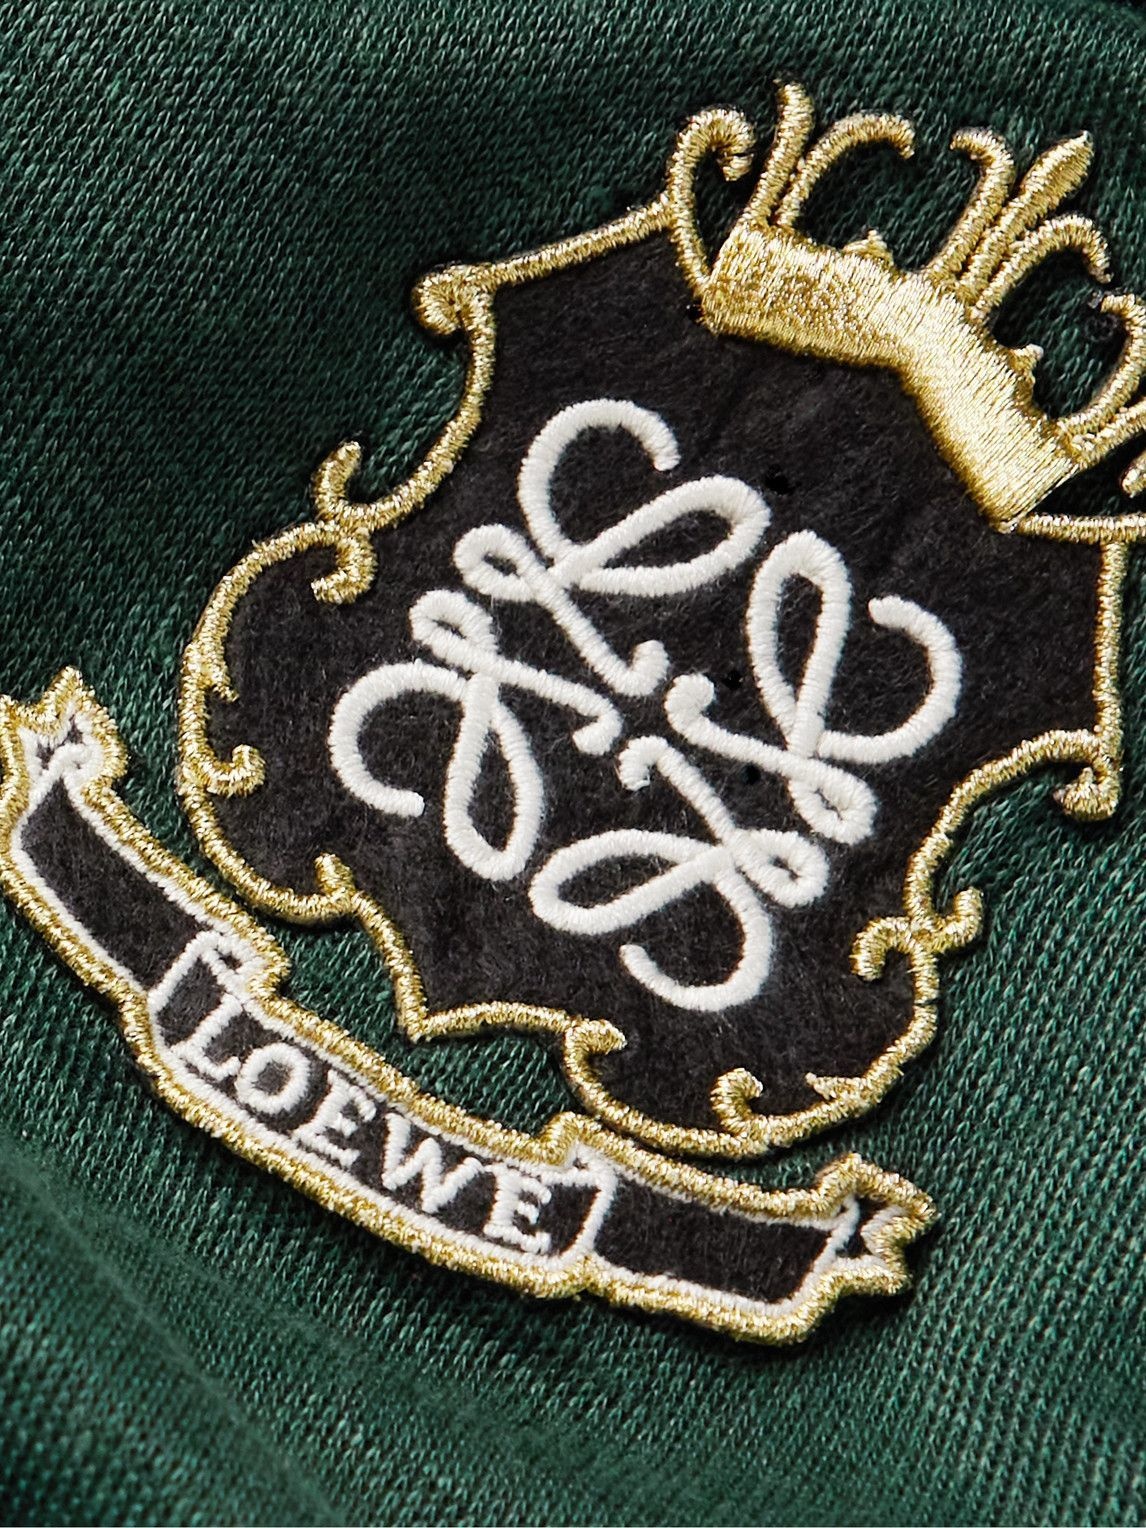 Loewe - Logo-Appliquéd Jersey T-Shirt - Green Loewe